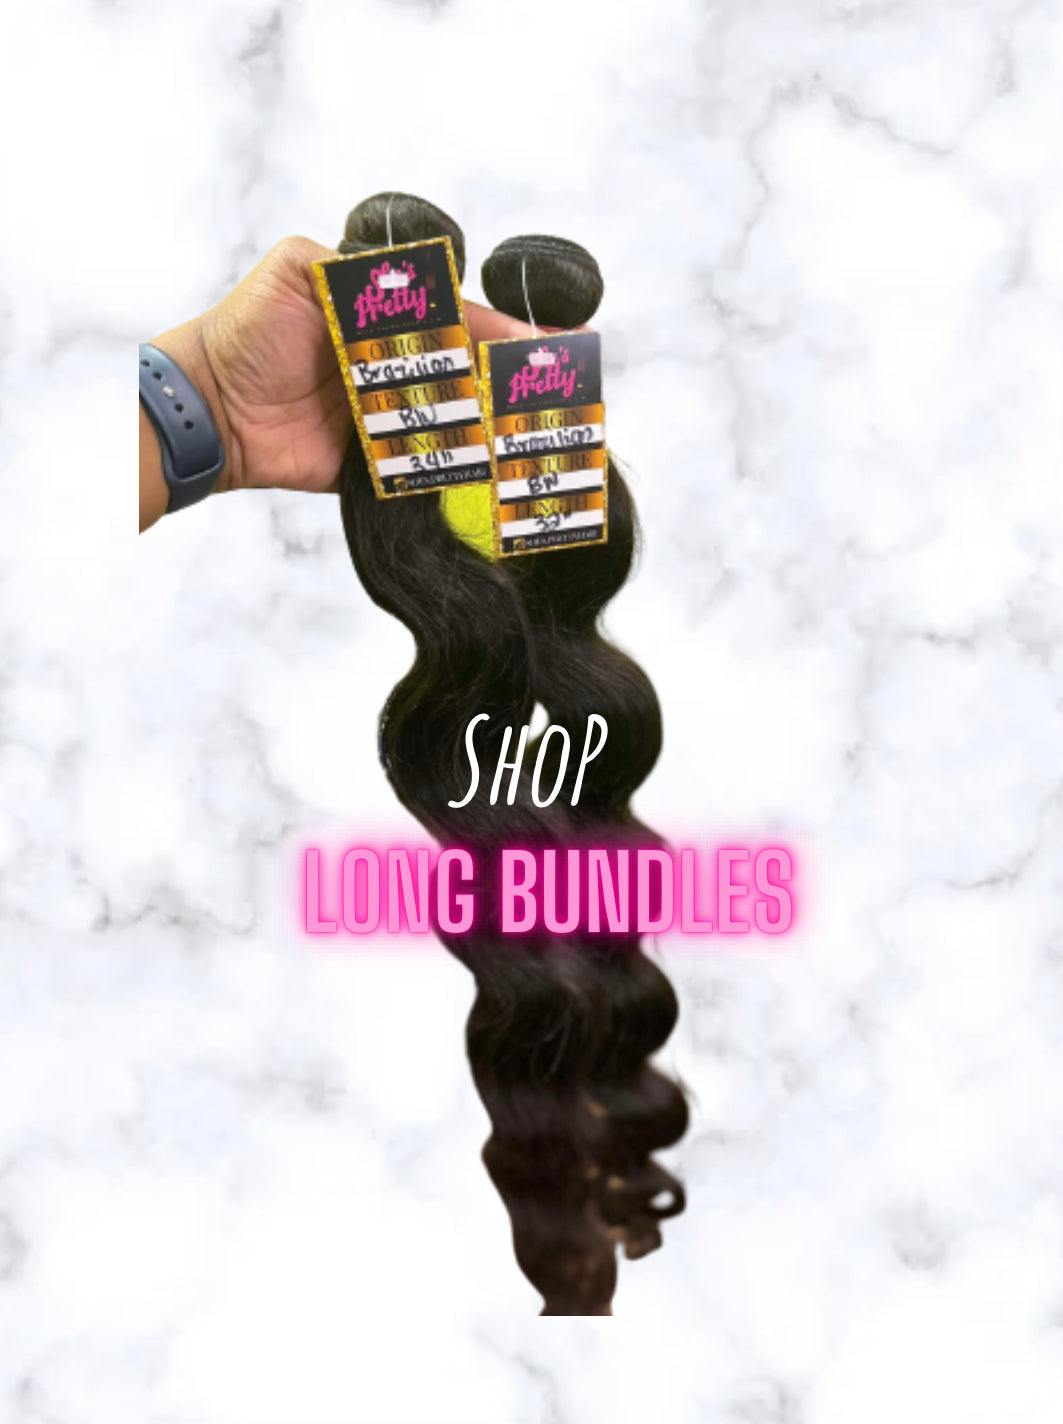 Long bundles